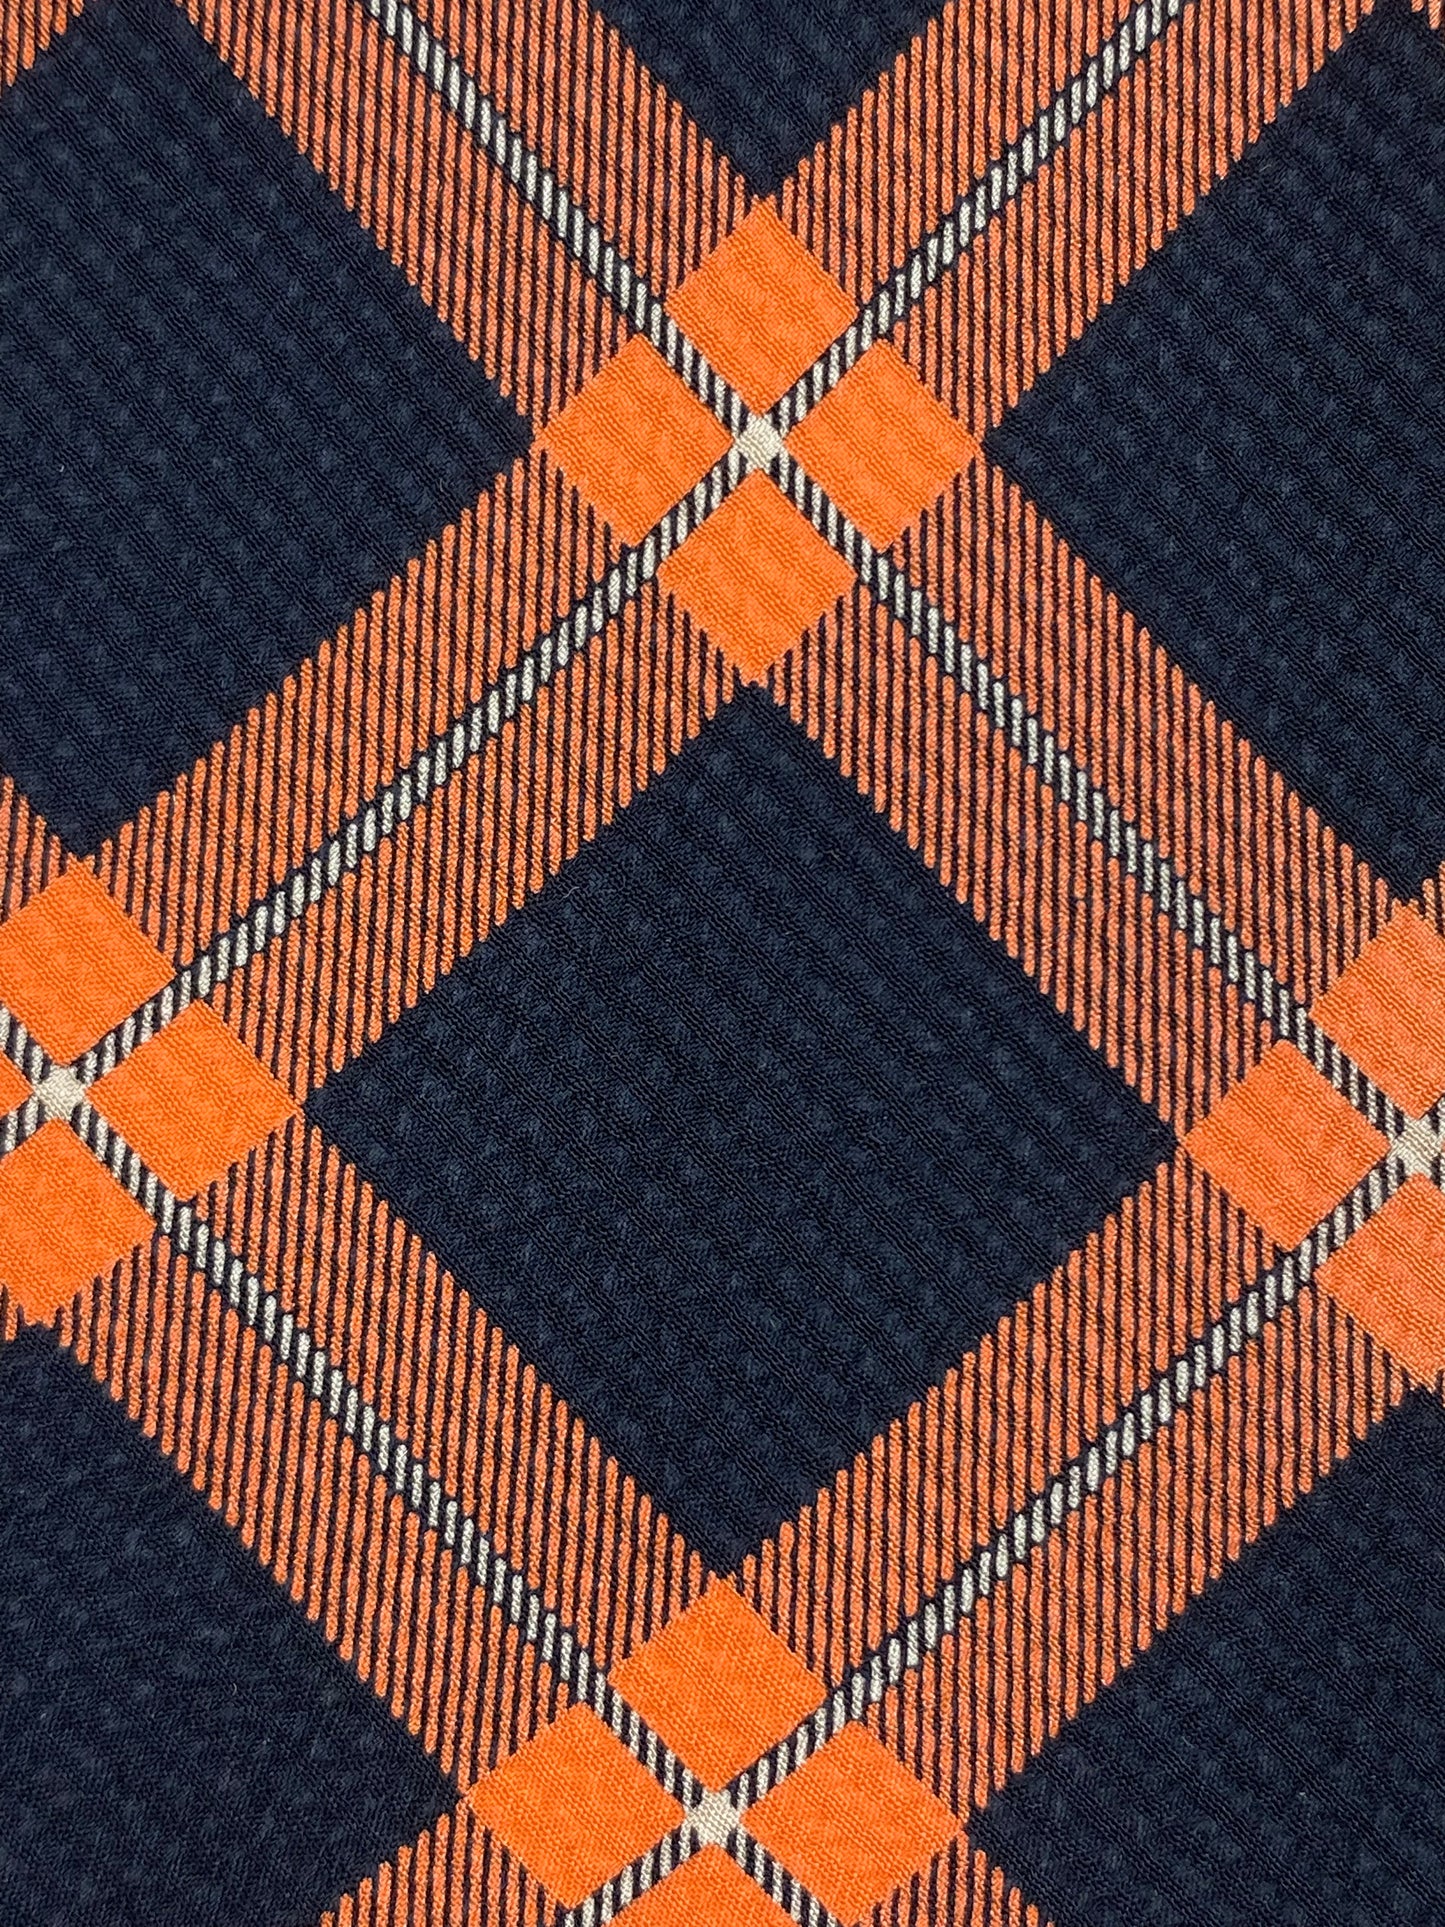 Close-up detail of: 90s Deadstock Silk Necktie, Men's Vintage Black/ Orange Check Pattern Tie, NOS